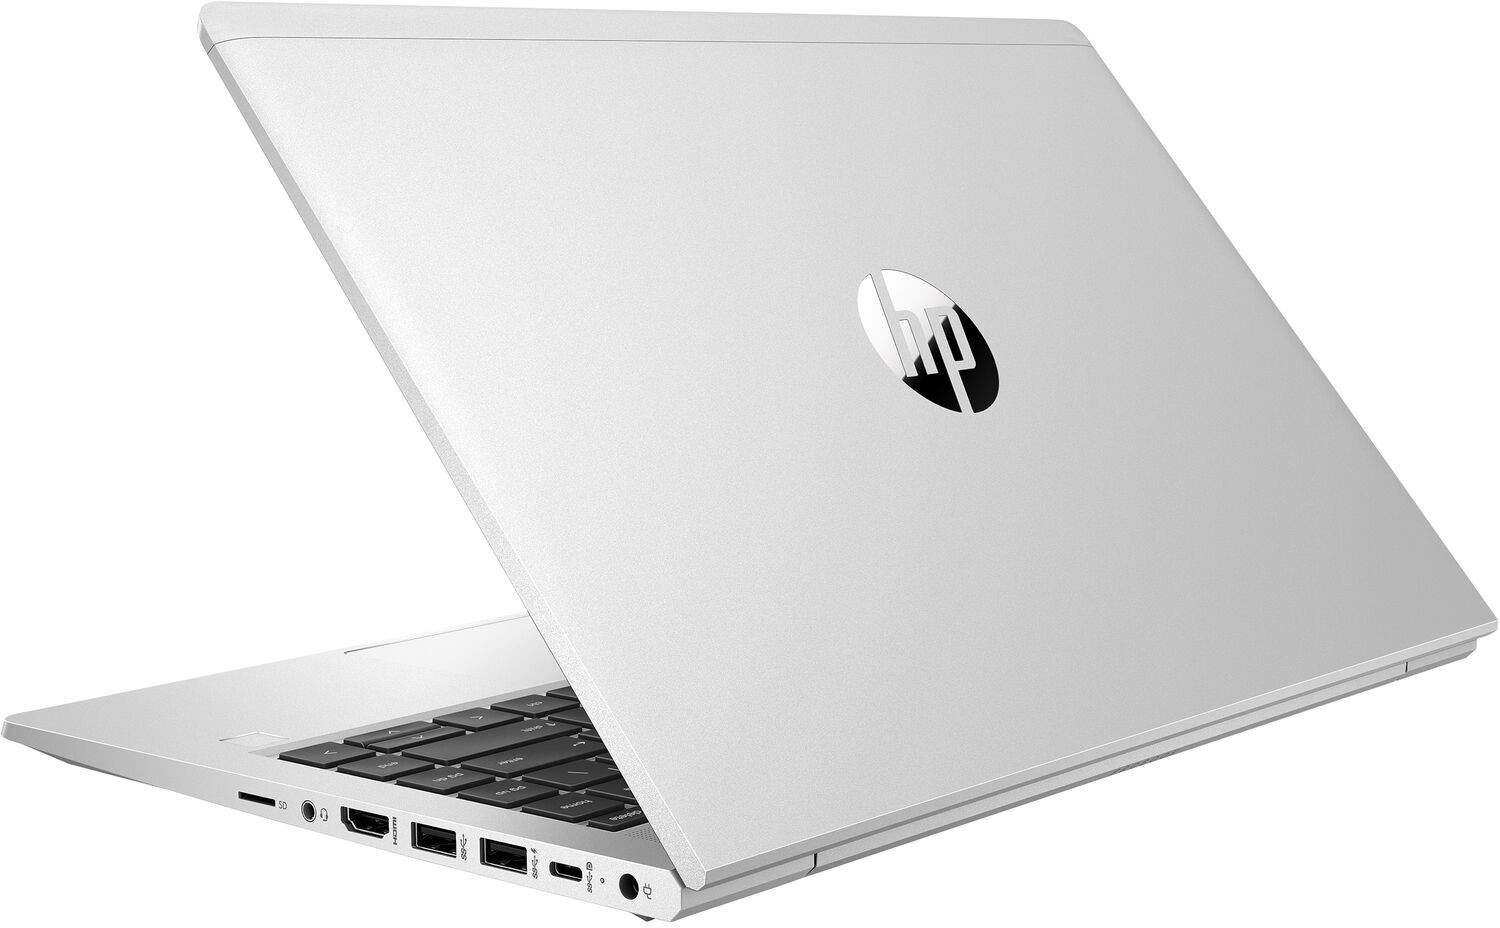 Ноутбук HP ProBook 440 G8 Core i5-1135G7 2.4GHz,14" FHD (1920x1080) AG,8Gb DDR4(1),256Gb SSD,45Wh LL,Clickpad Backlit ,FPR,1.6kg,1y,Silver,DOS-39334